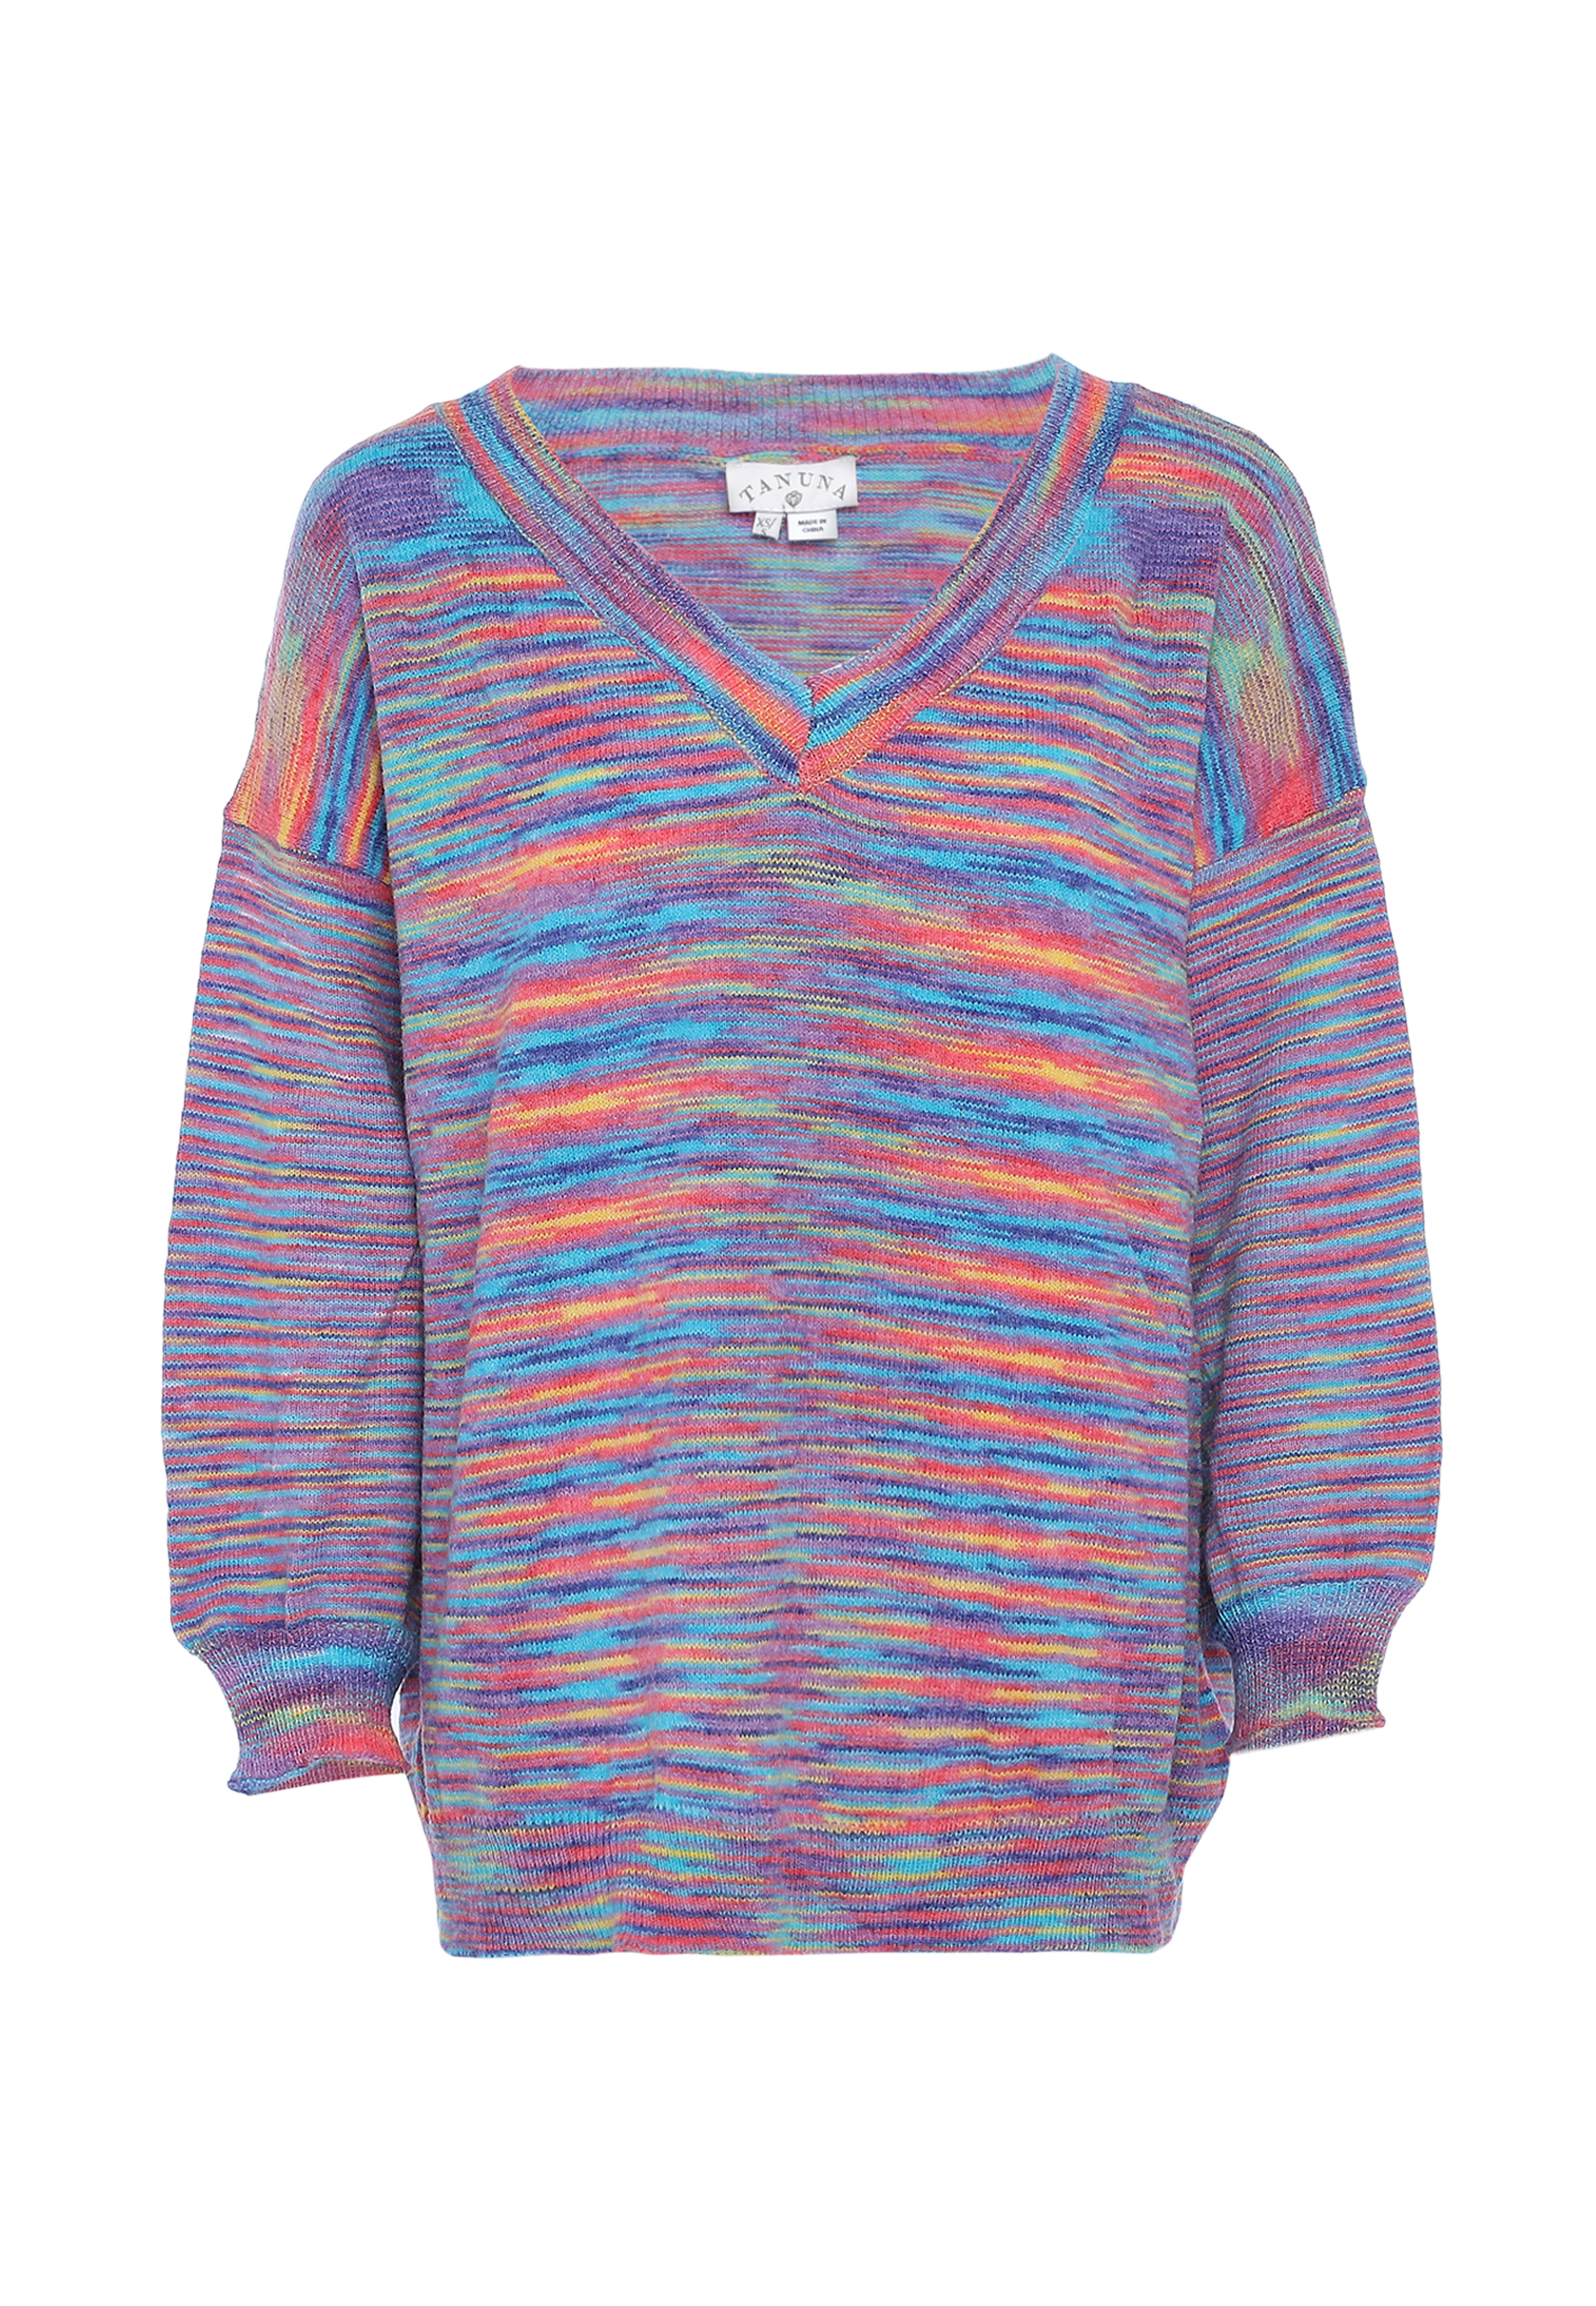 Свитер Tanuna Sweater, цвет LILA MEHRFARBIG свитер tanuna strick цвет wollweiss mehrfarbig